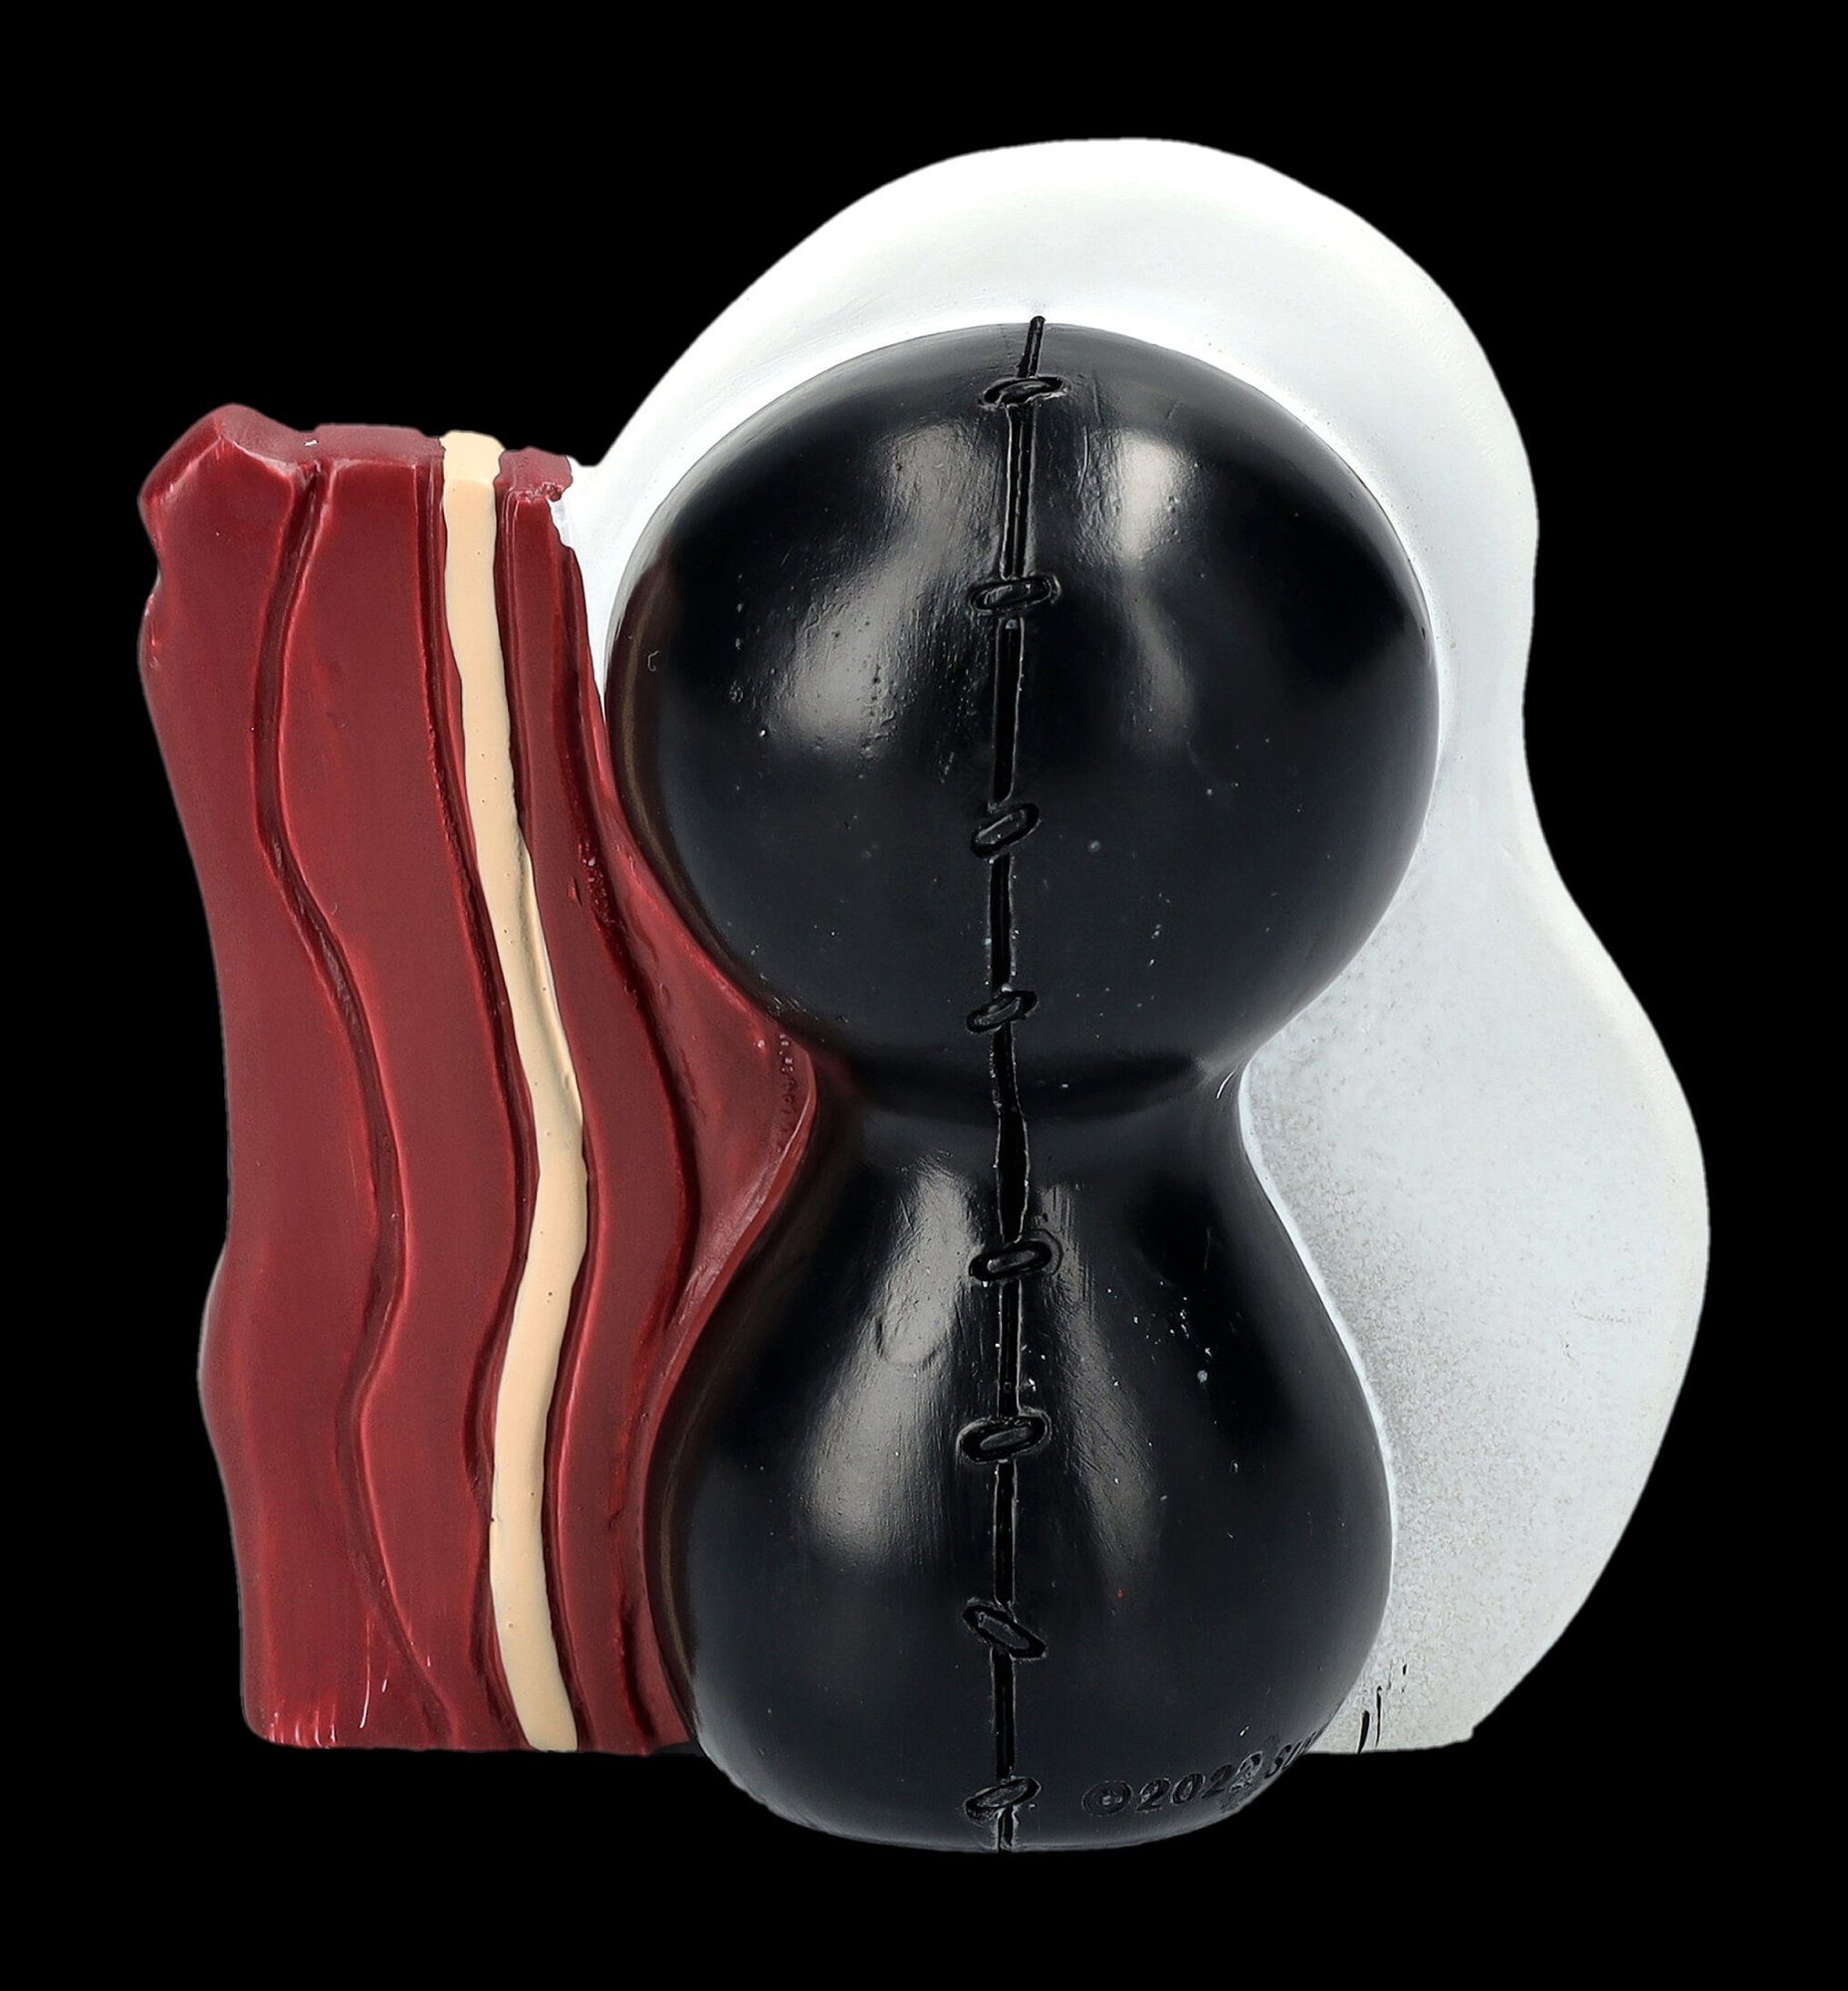 Dekofigur - Shop Figur - Fantasy Egg Figuren Up Furrybones Side Sunny Spiegelei Dekoration GmbH Gothic